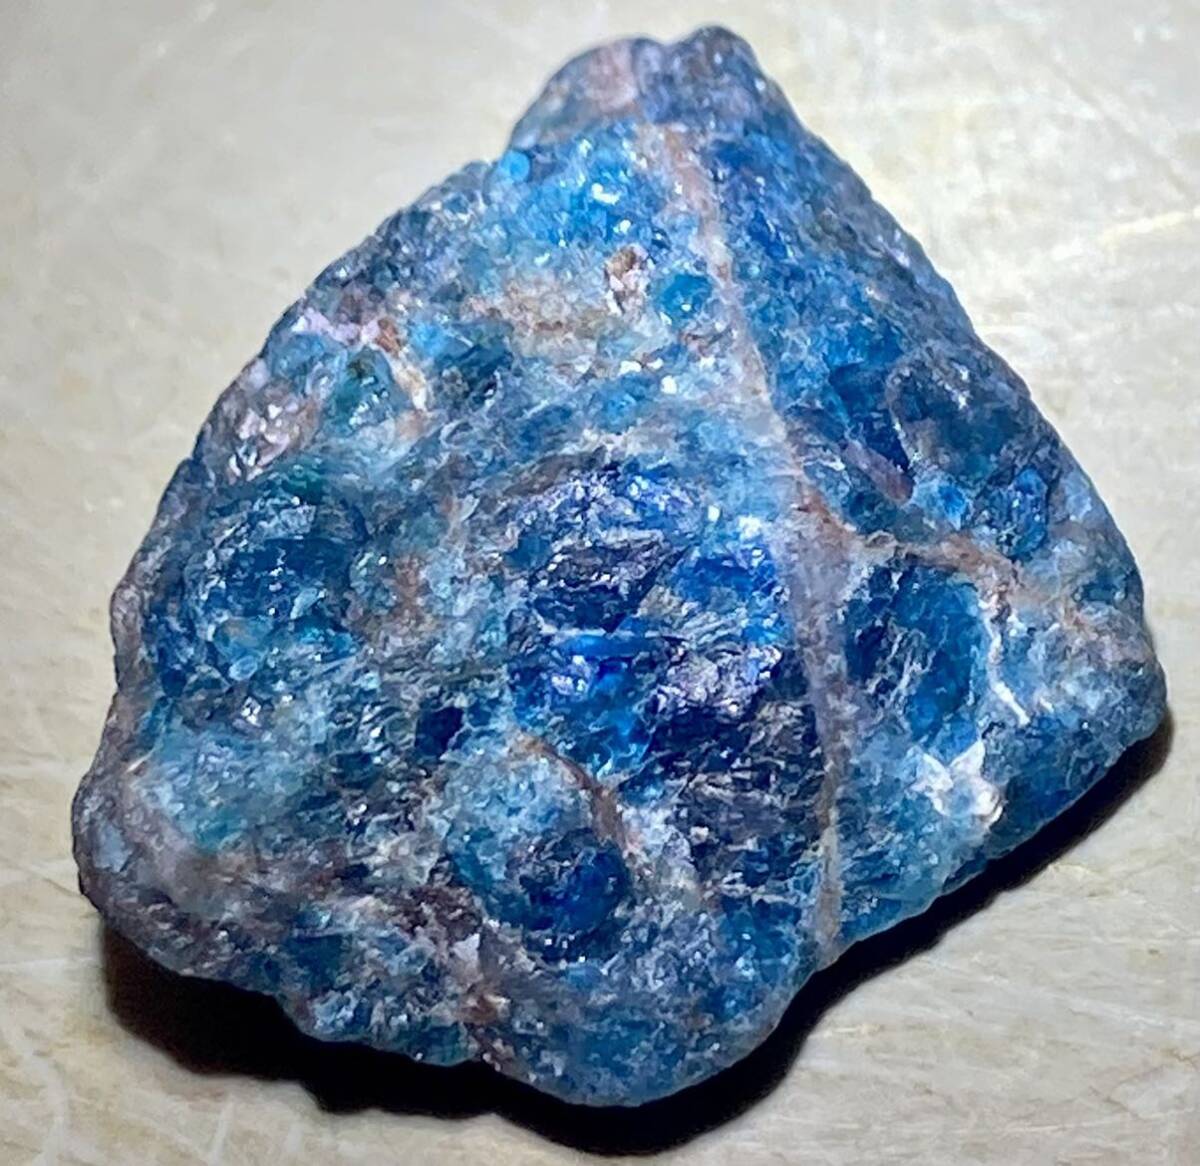 マダガスカル産天然ネオンブルーアパタイト原石24.70gの画像2